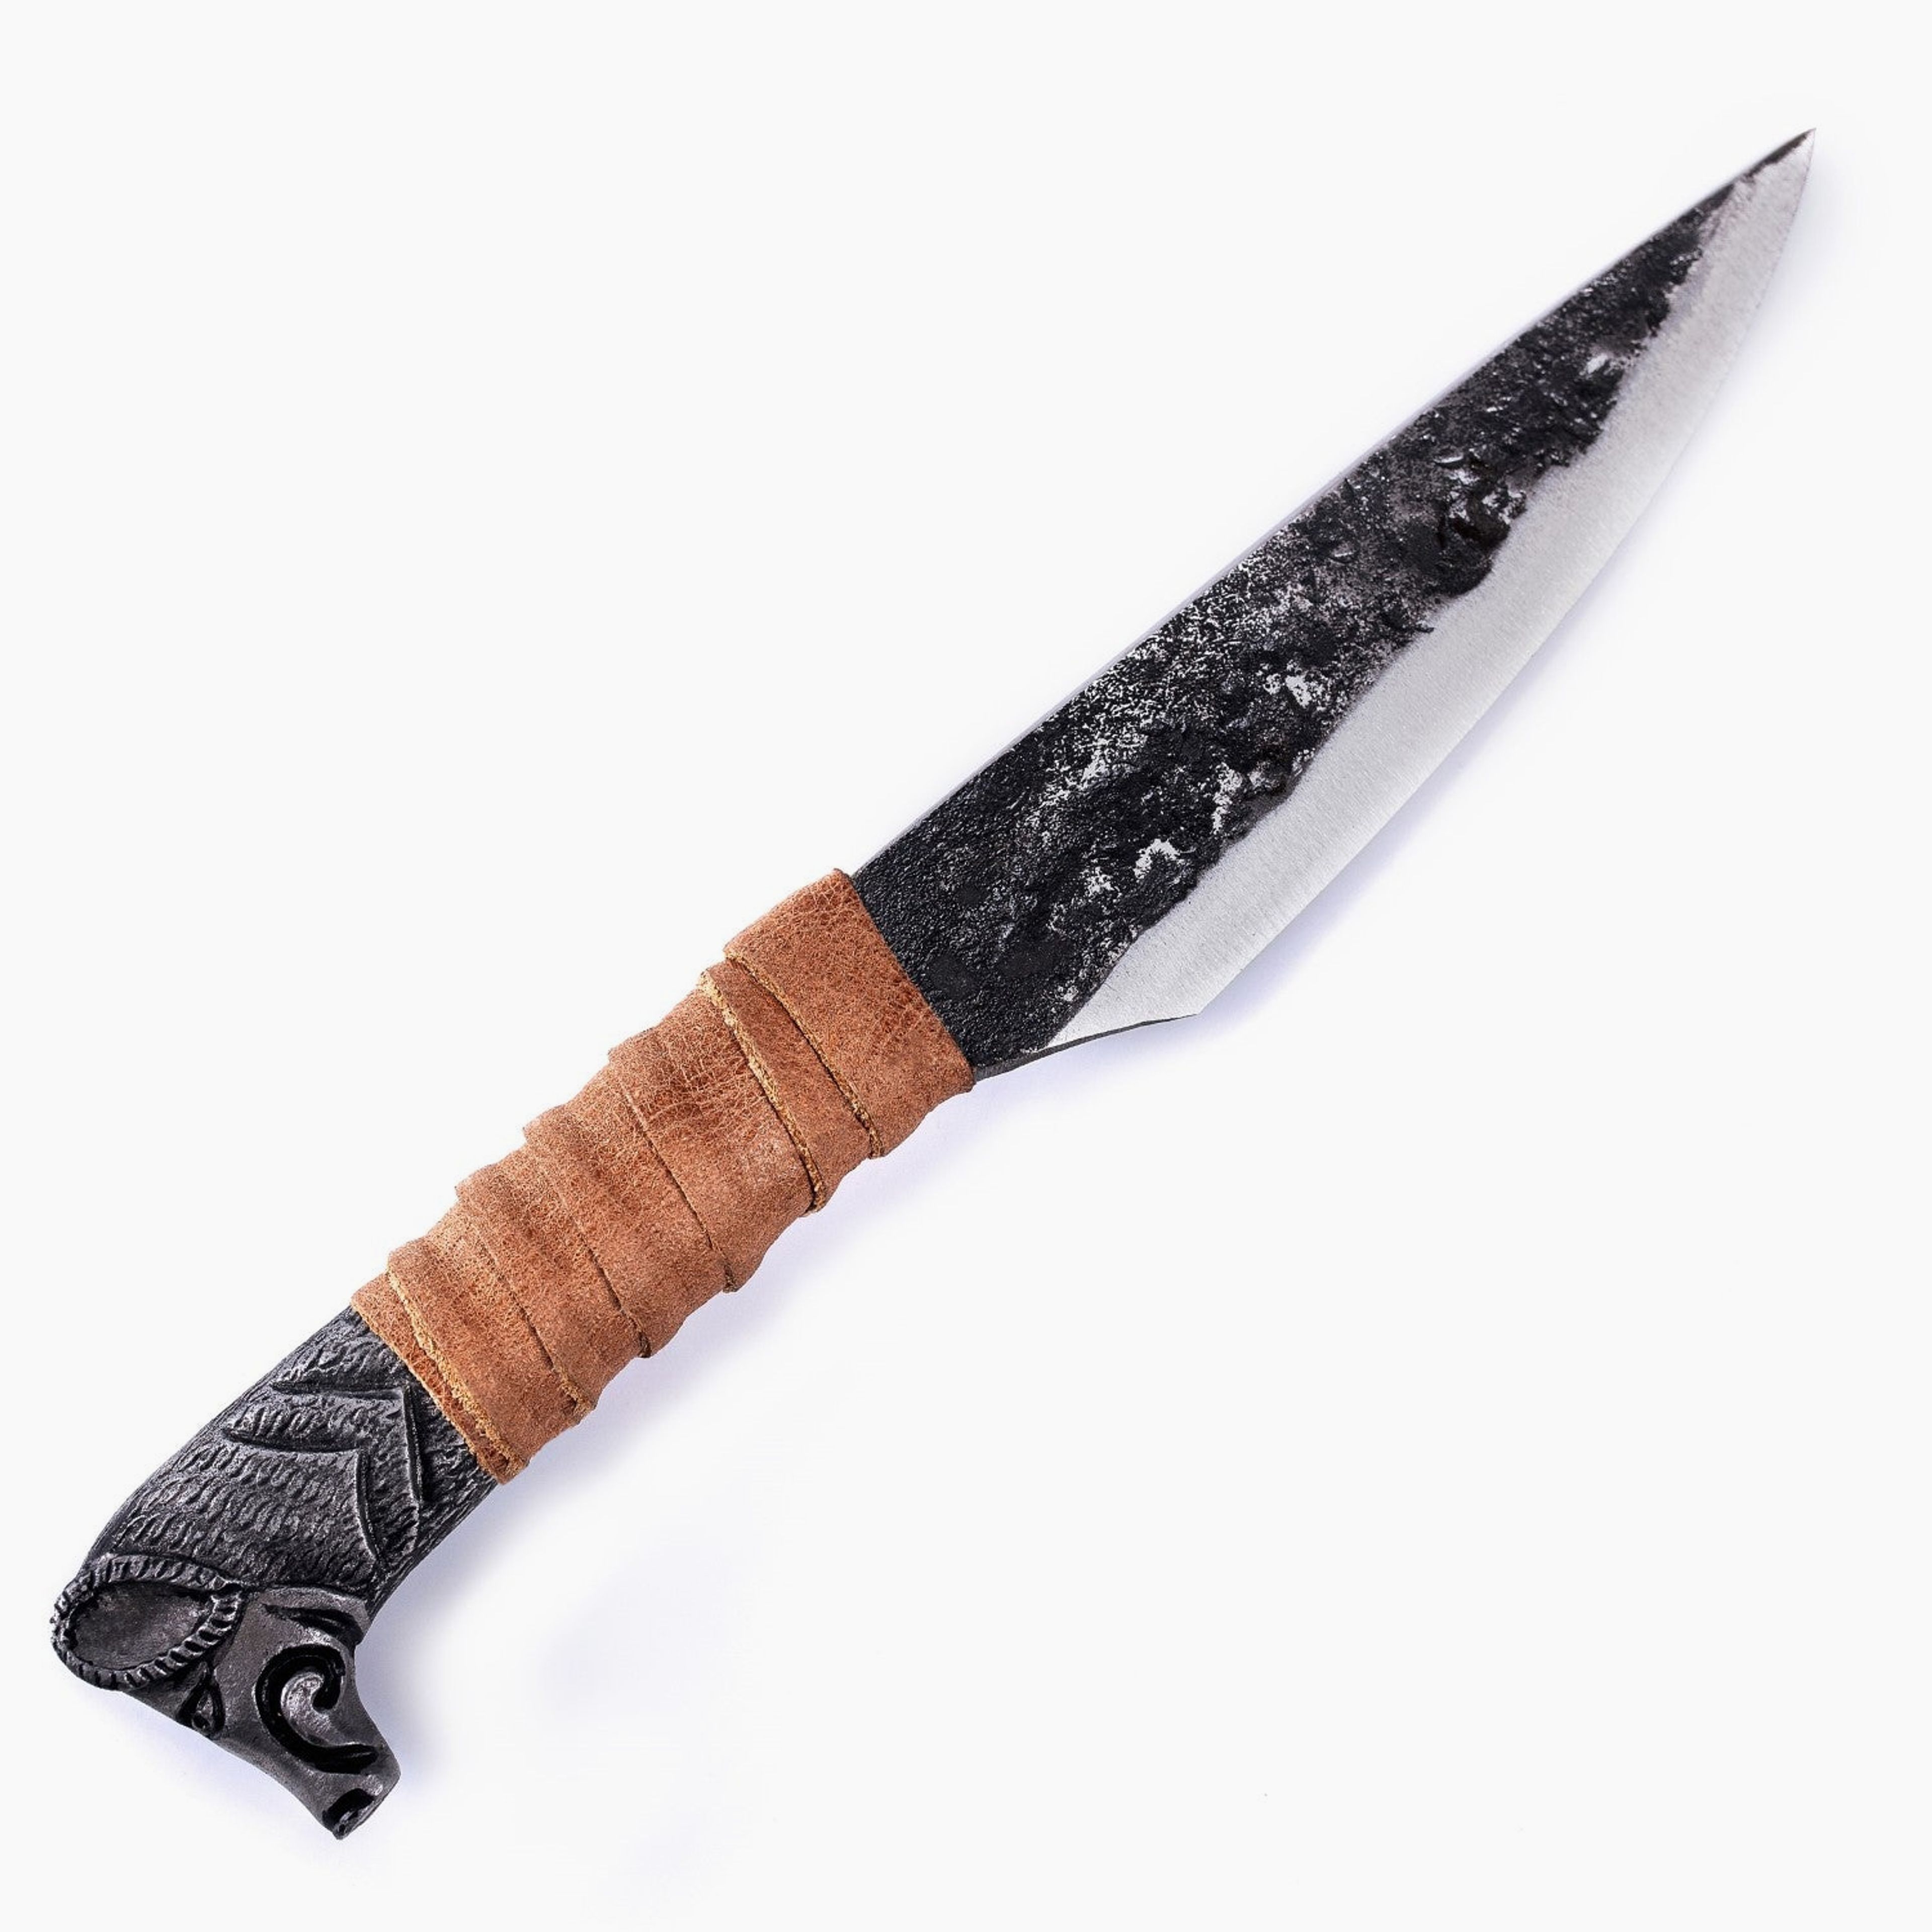 Boar's Head Knife - 5.5" Blade (12 cm)